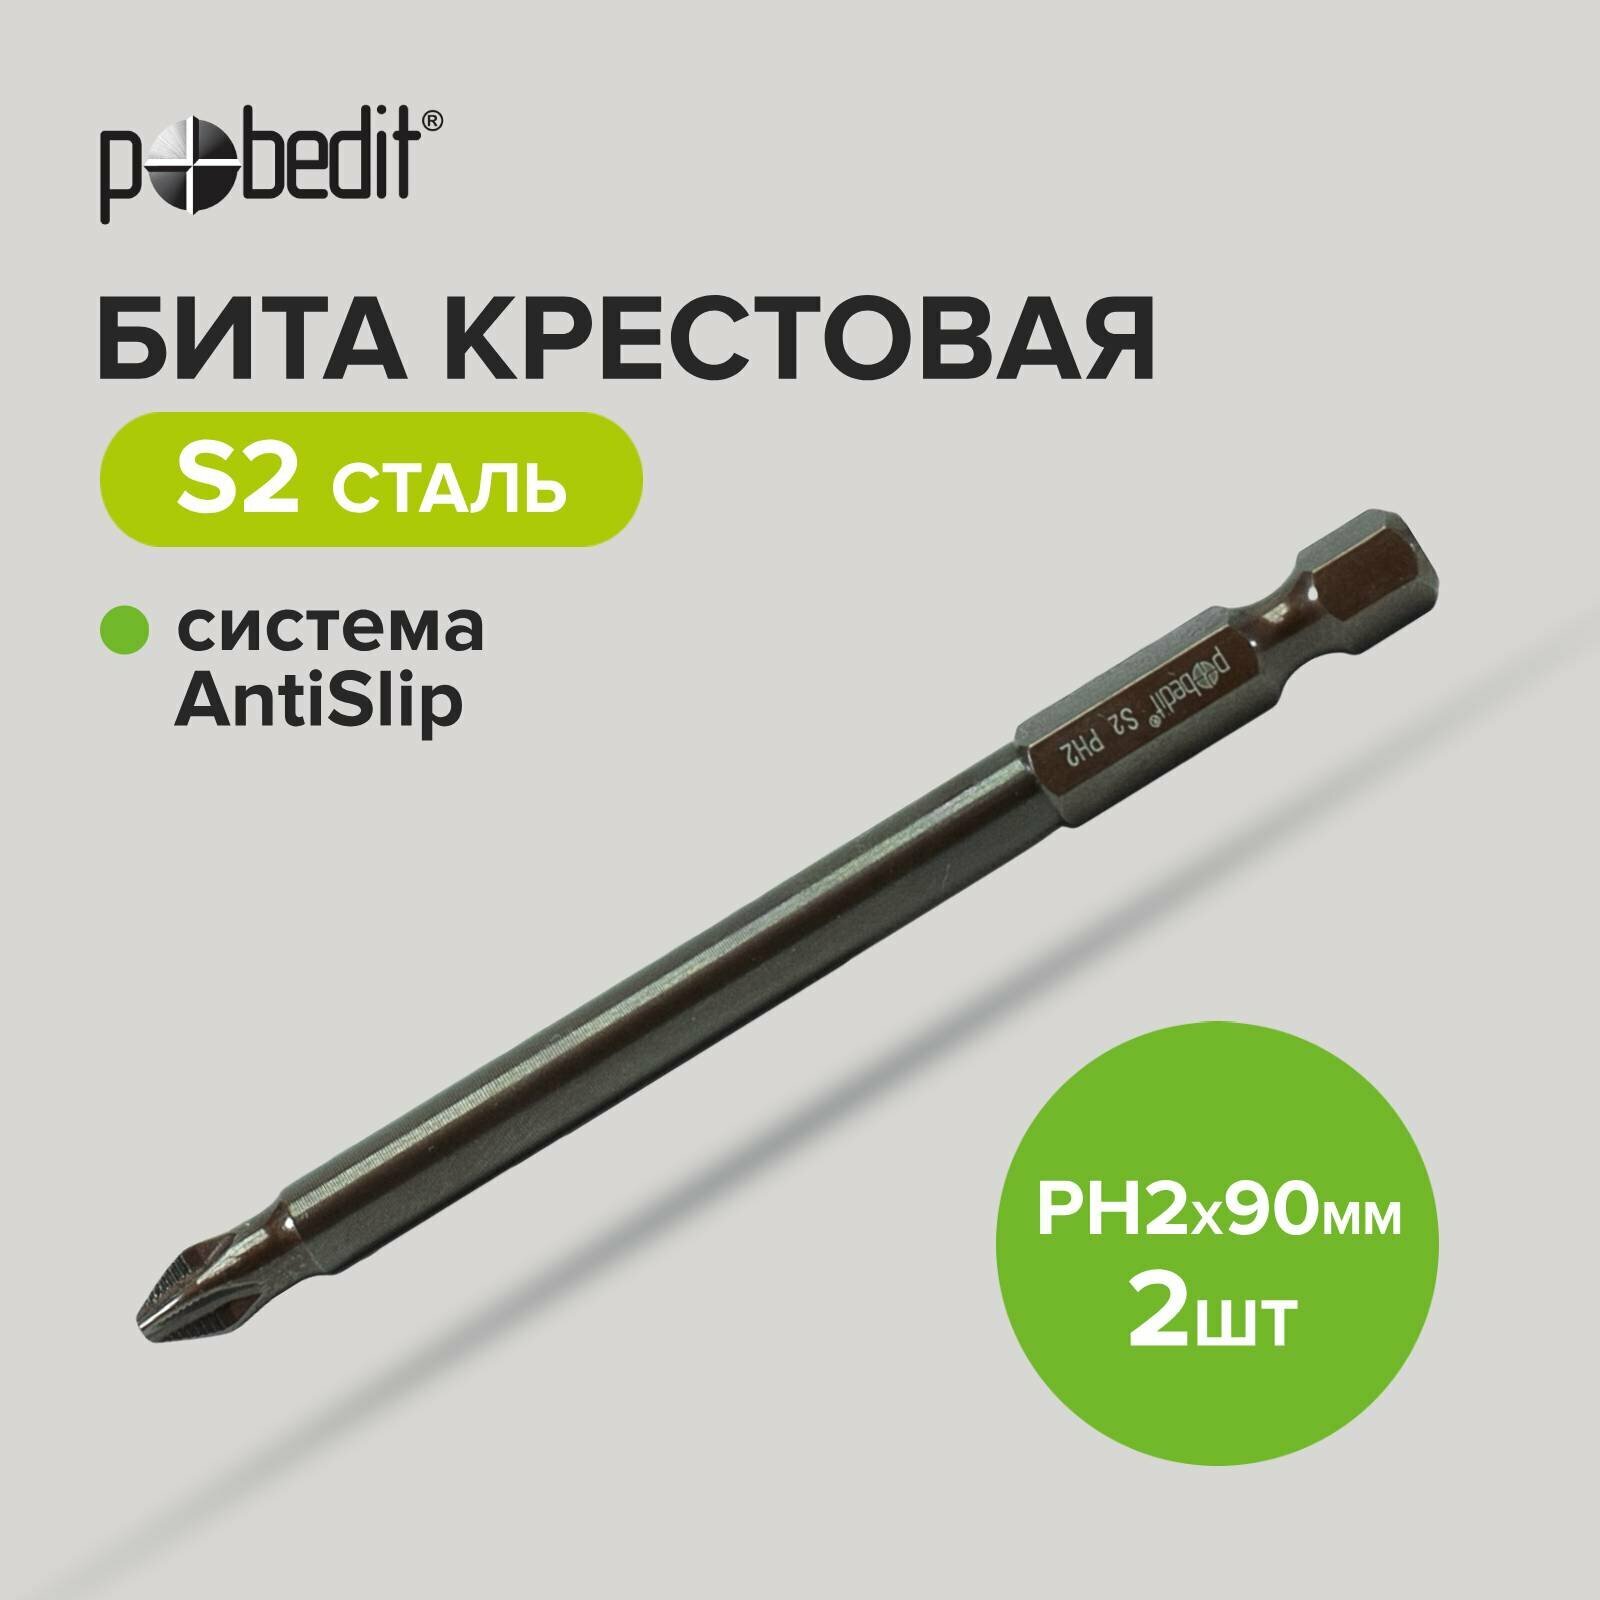 Бита DELUXE PH 2х90 мм S2+Bronze+AntiSlip Pobedit 2 шт./блистер